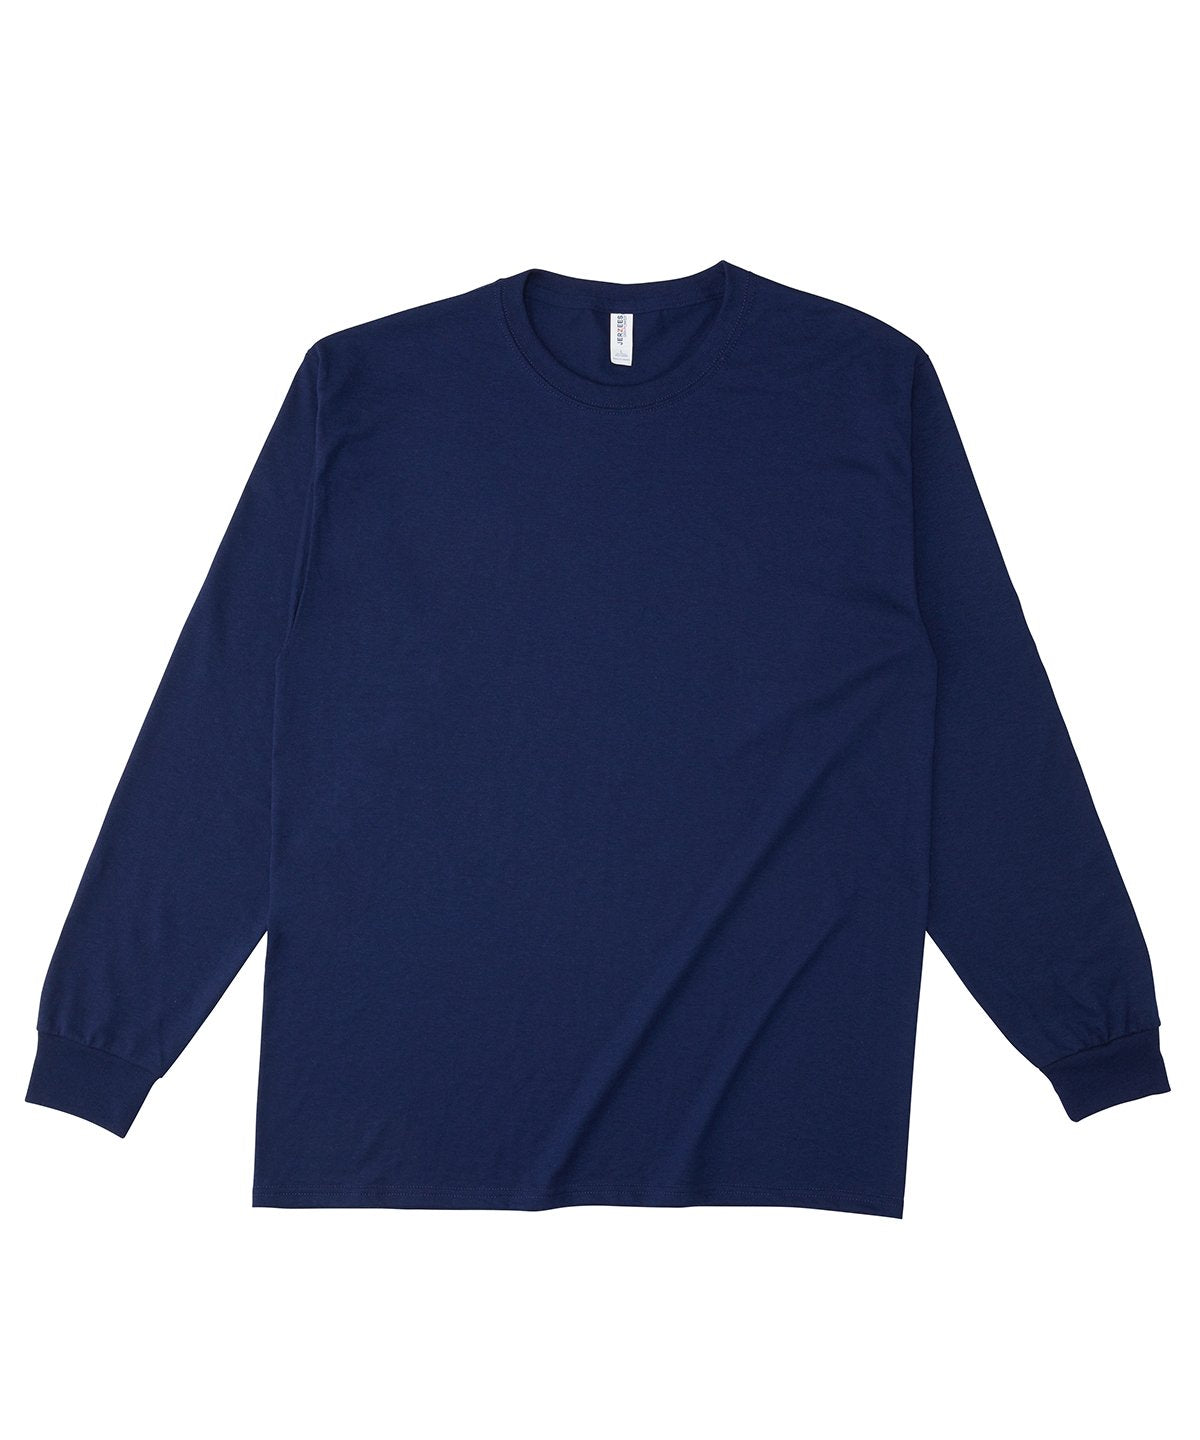 【専用】“JERZEES” Longsleeve Shirt / ロンT 紺